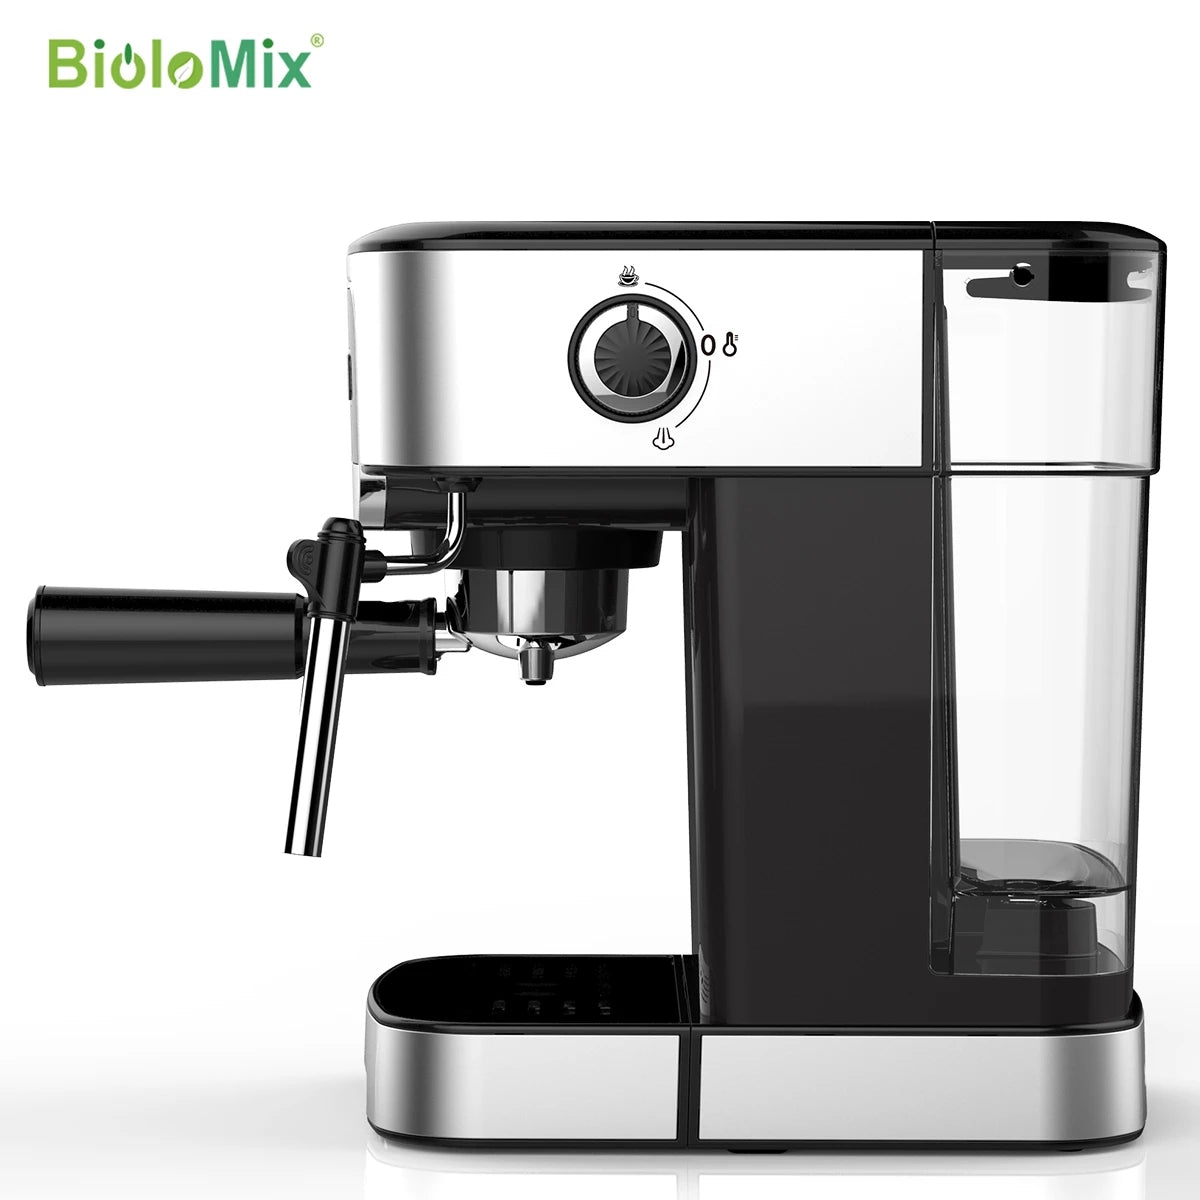 BioloMix 1200W 20 Bar Espresso Coffee Machine CM6868